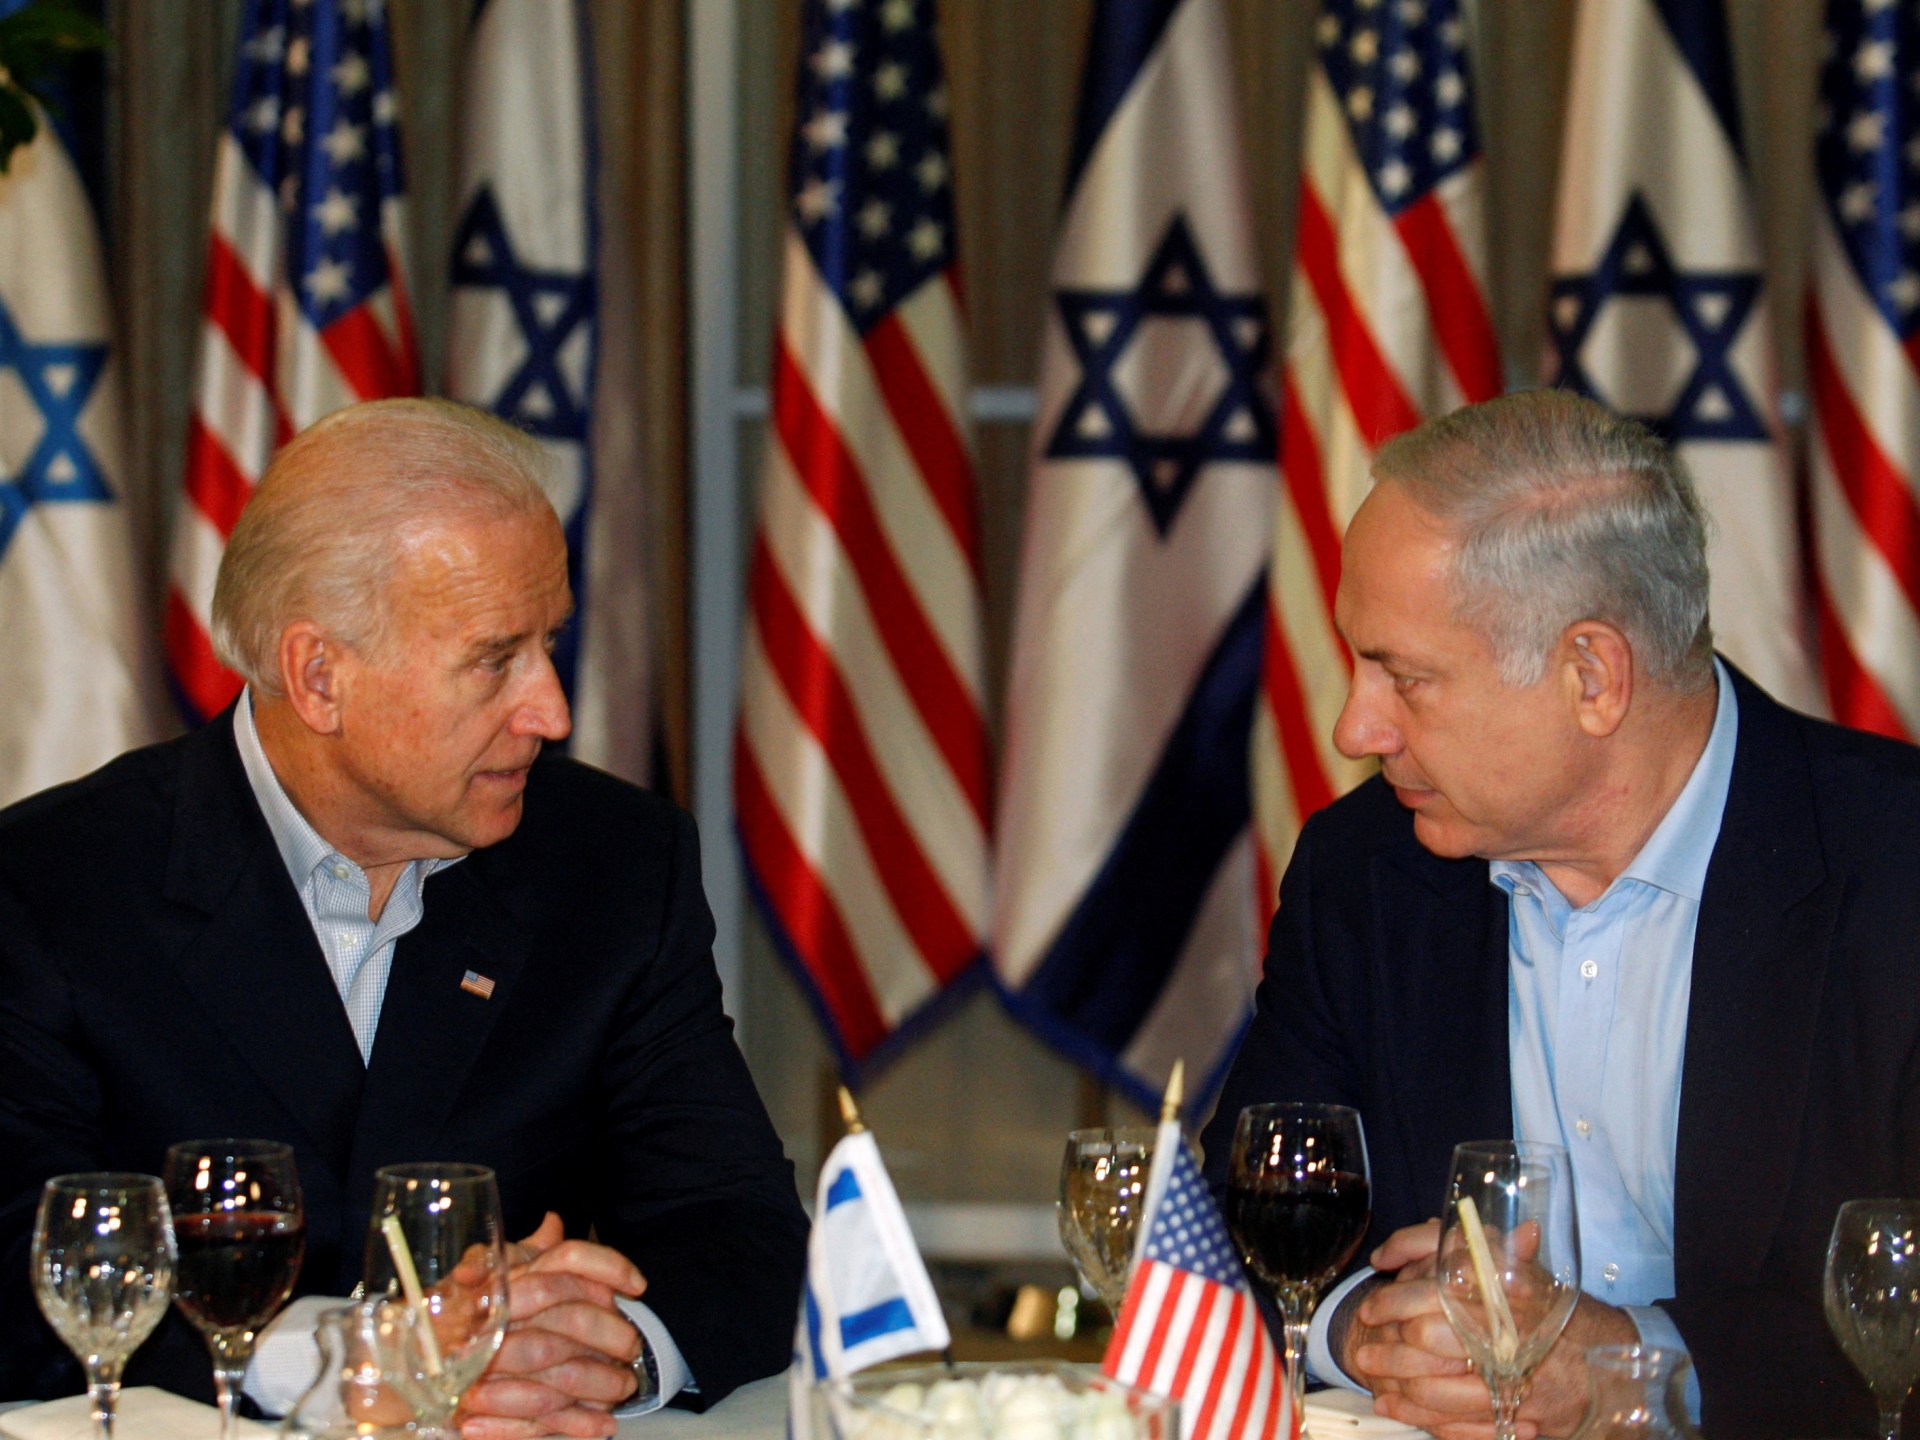 توماس فريدمان: على إسرائيل الانسحاب من غزة وعلى أميركا التوقف عن التحدث معها بلطف | سياسة – البوكس نيوز